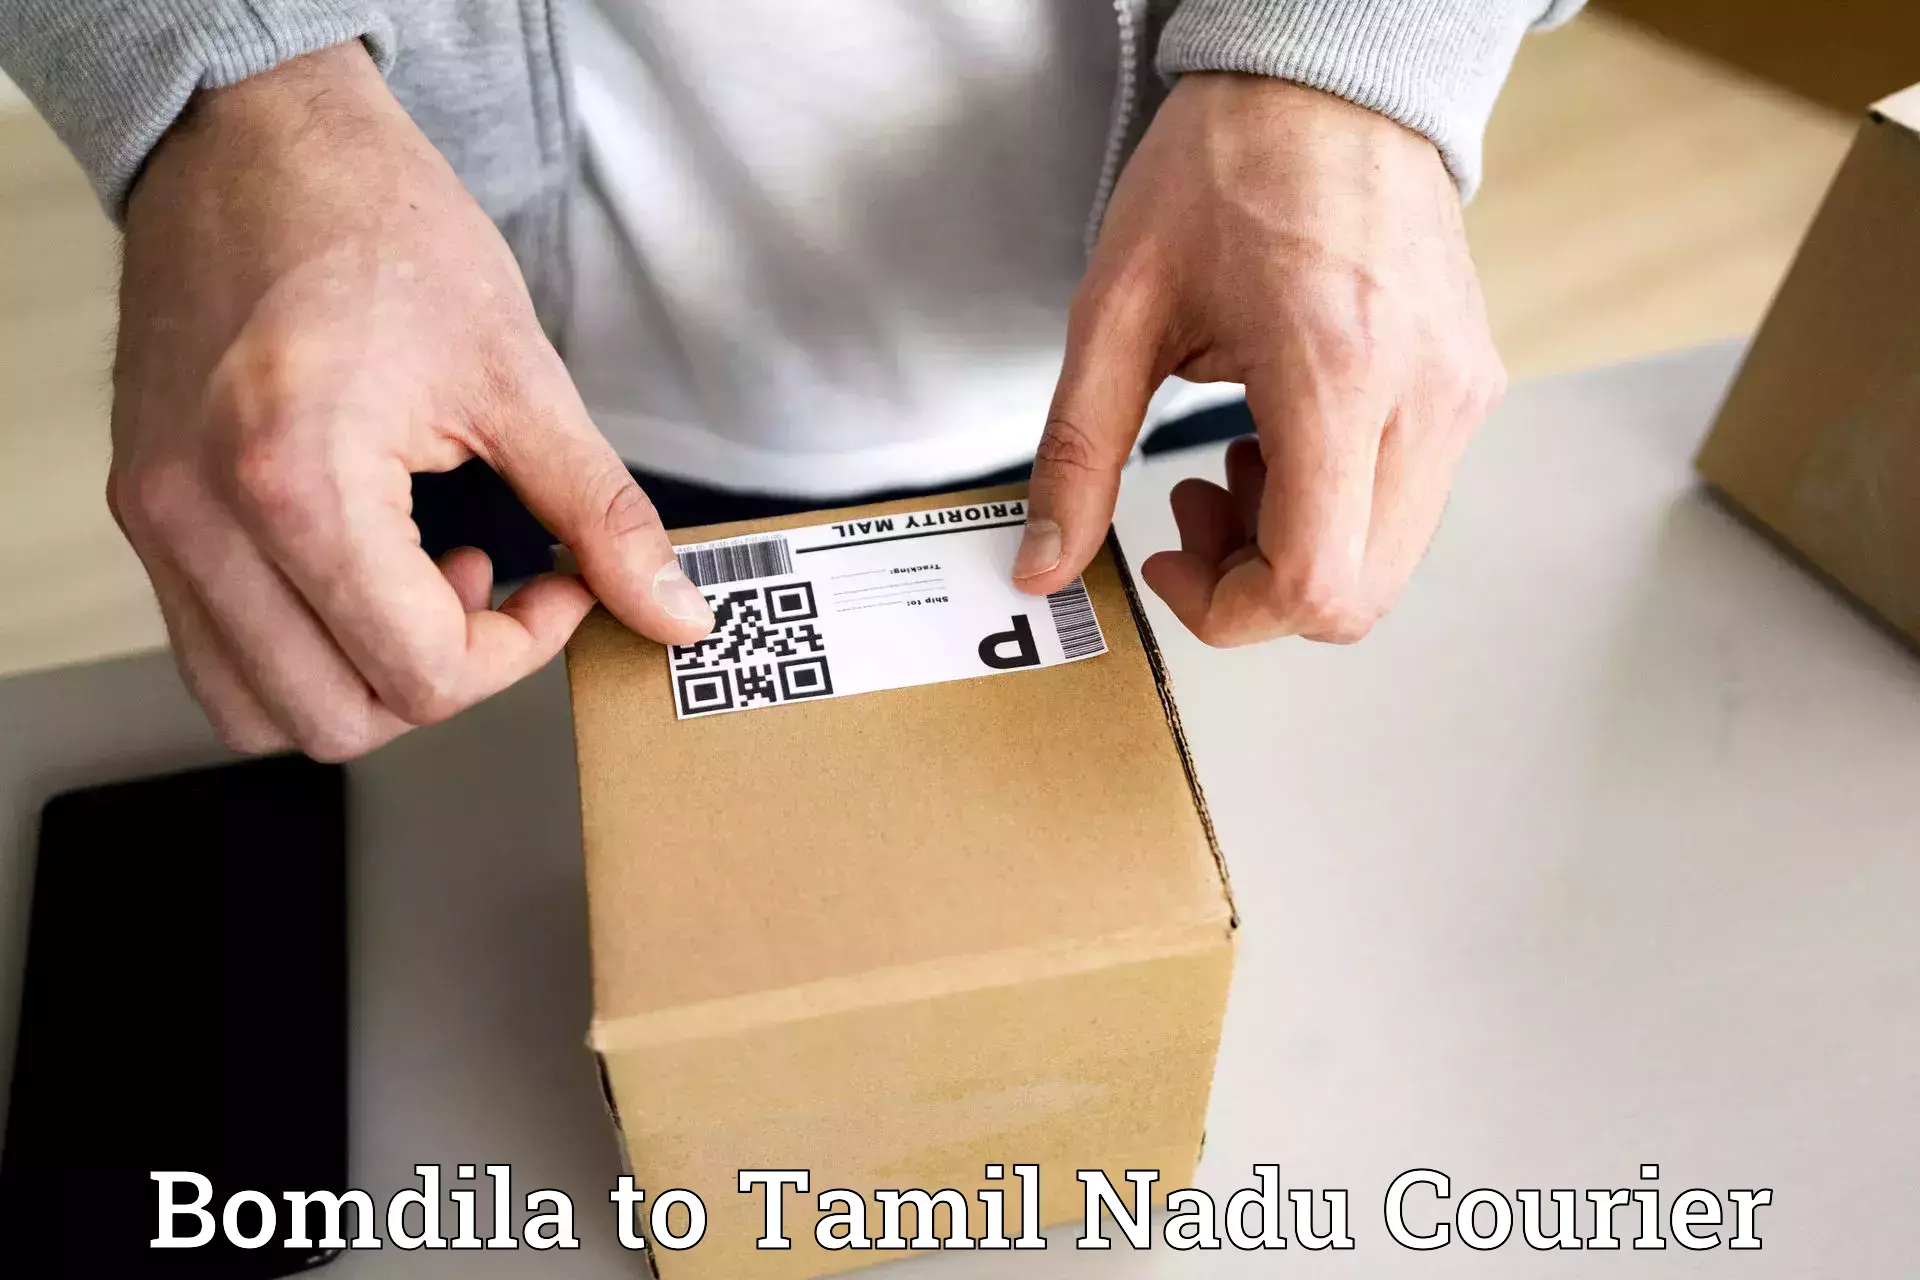 Courier service efficiency in Bomdila to Tamil Nadu